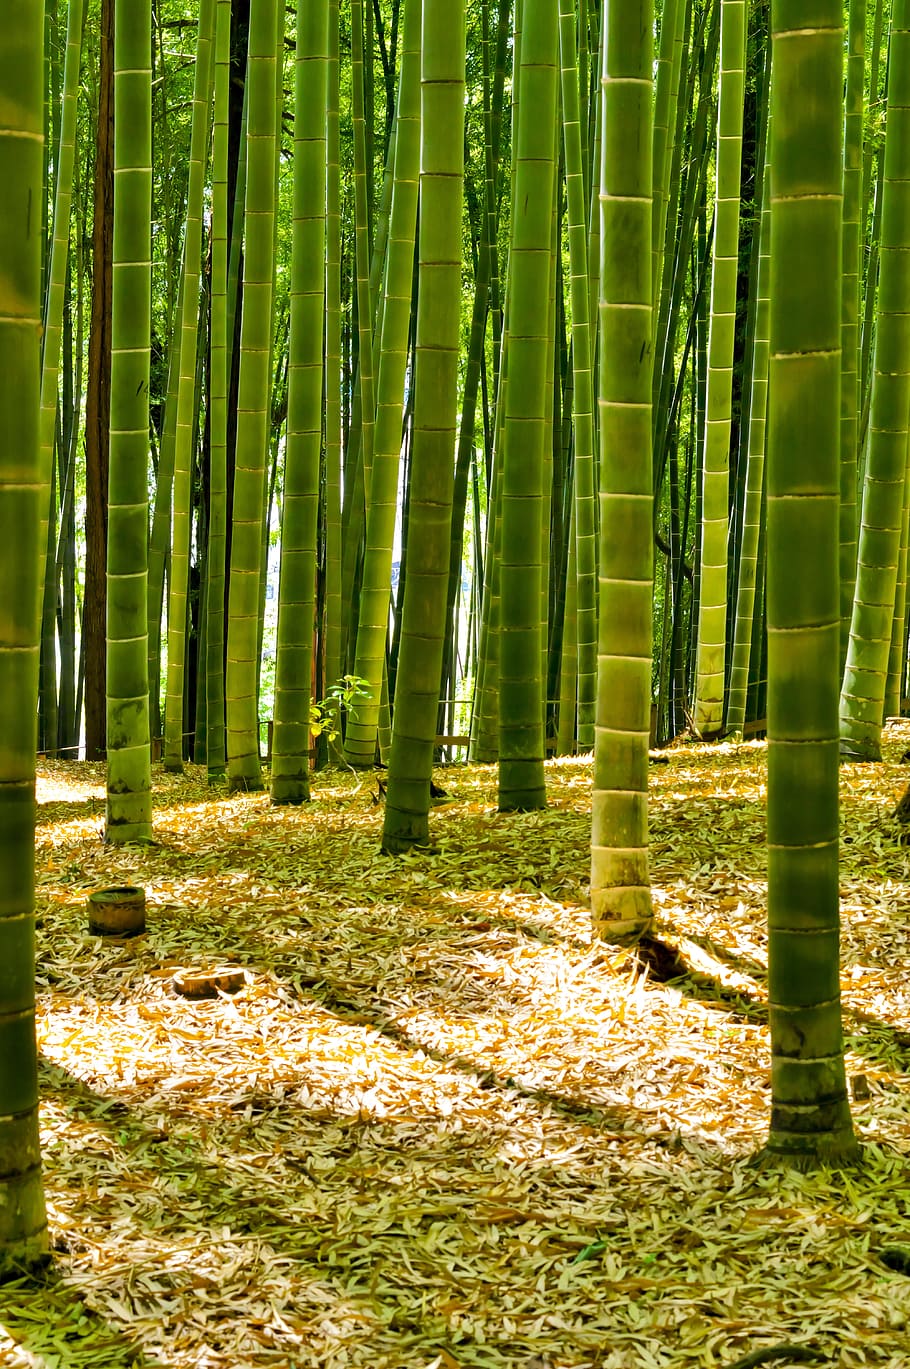 緑の竹の木, 日本, 竹, 森, 竹林, 緑, 自然, 風景, 植物, さやま丘